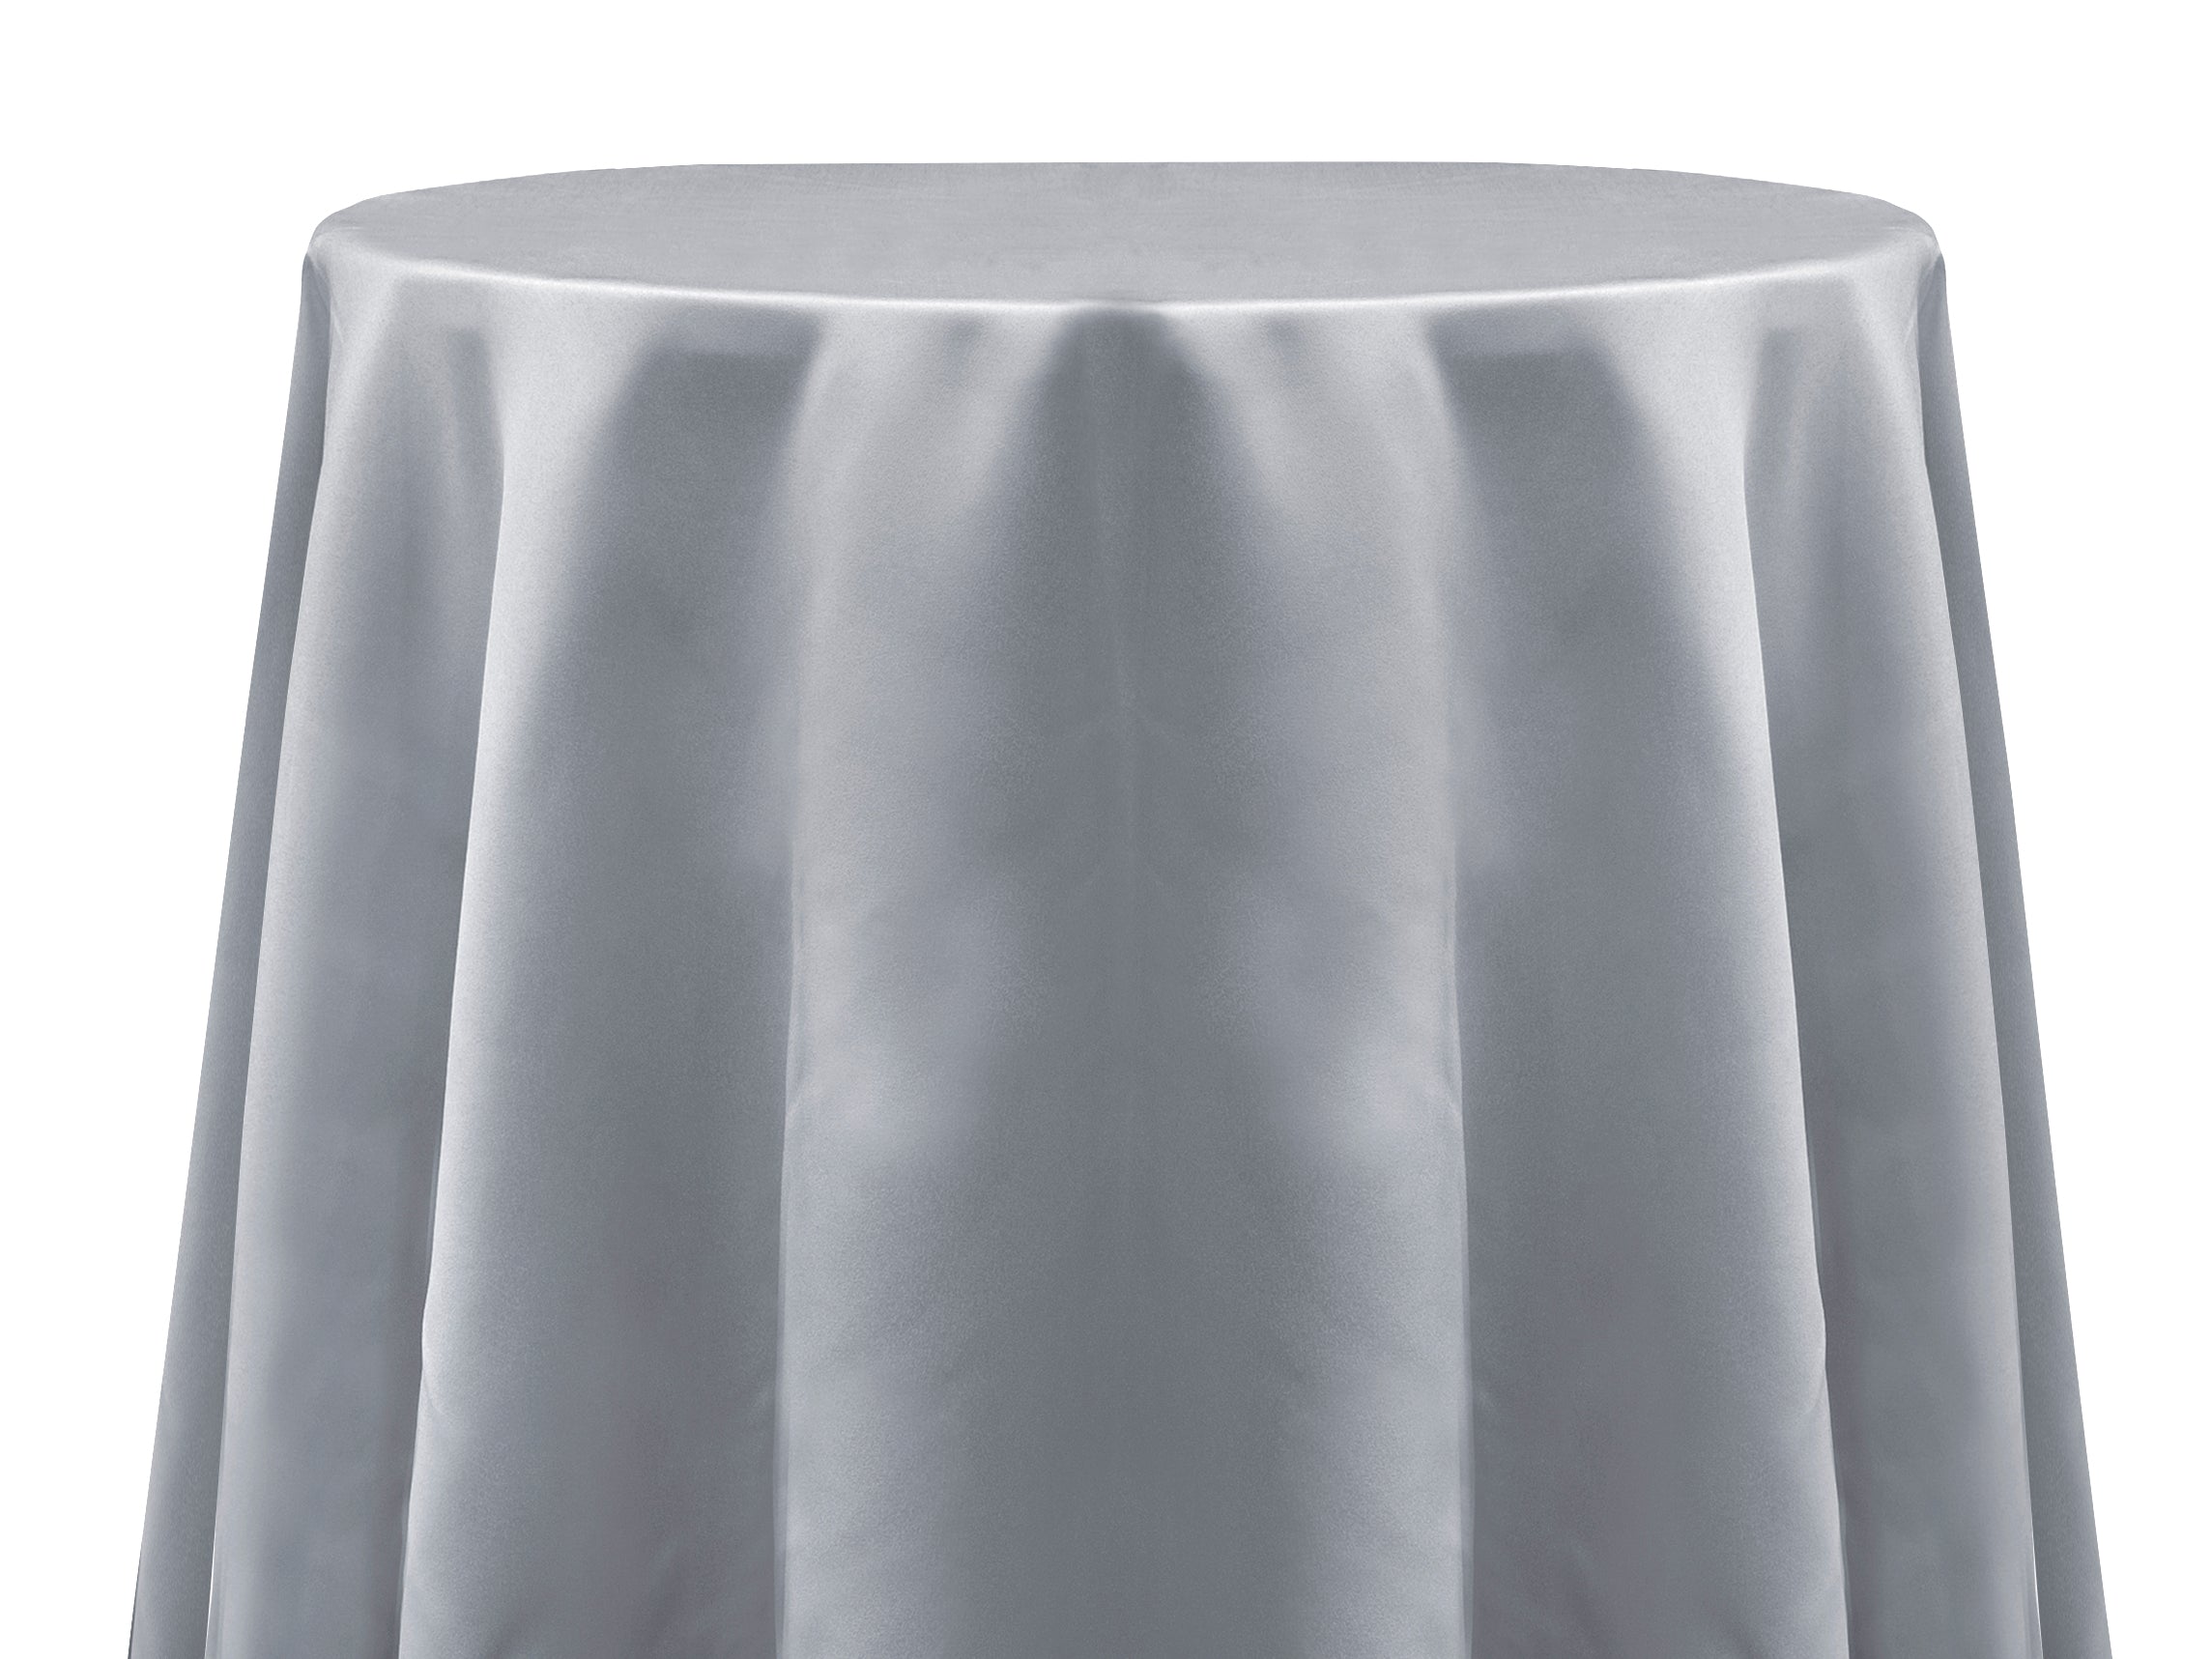 Tablecloth Satin Silver